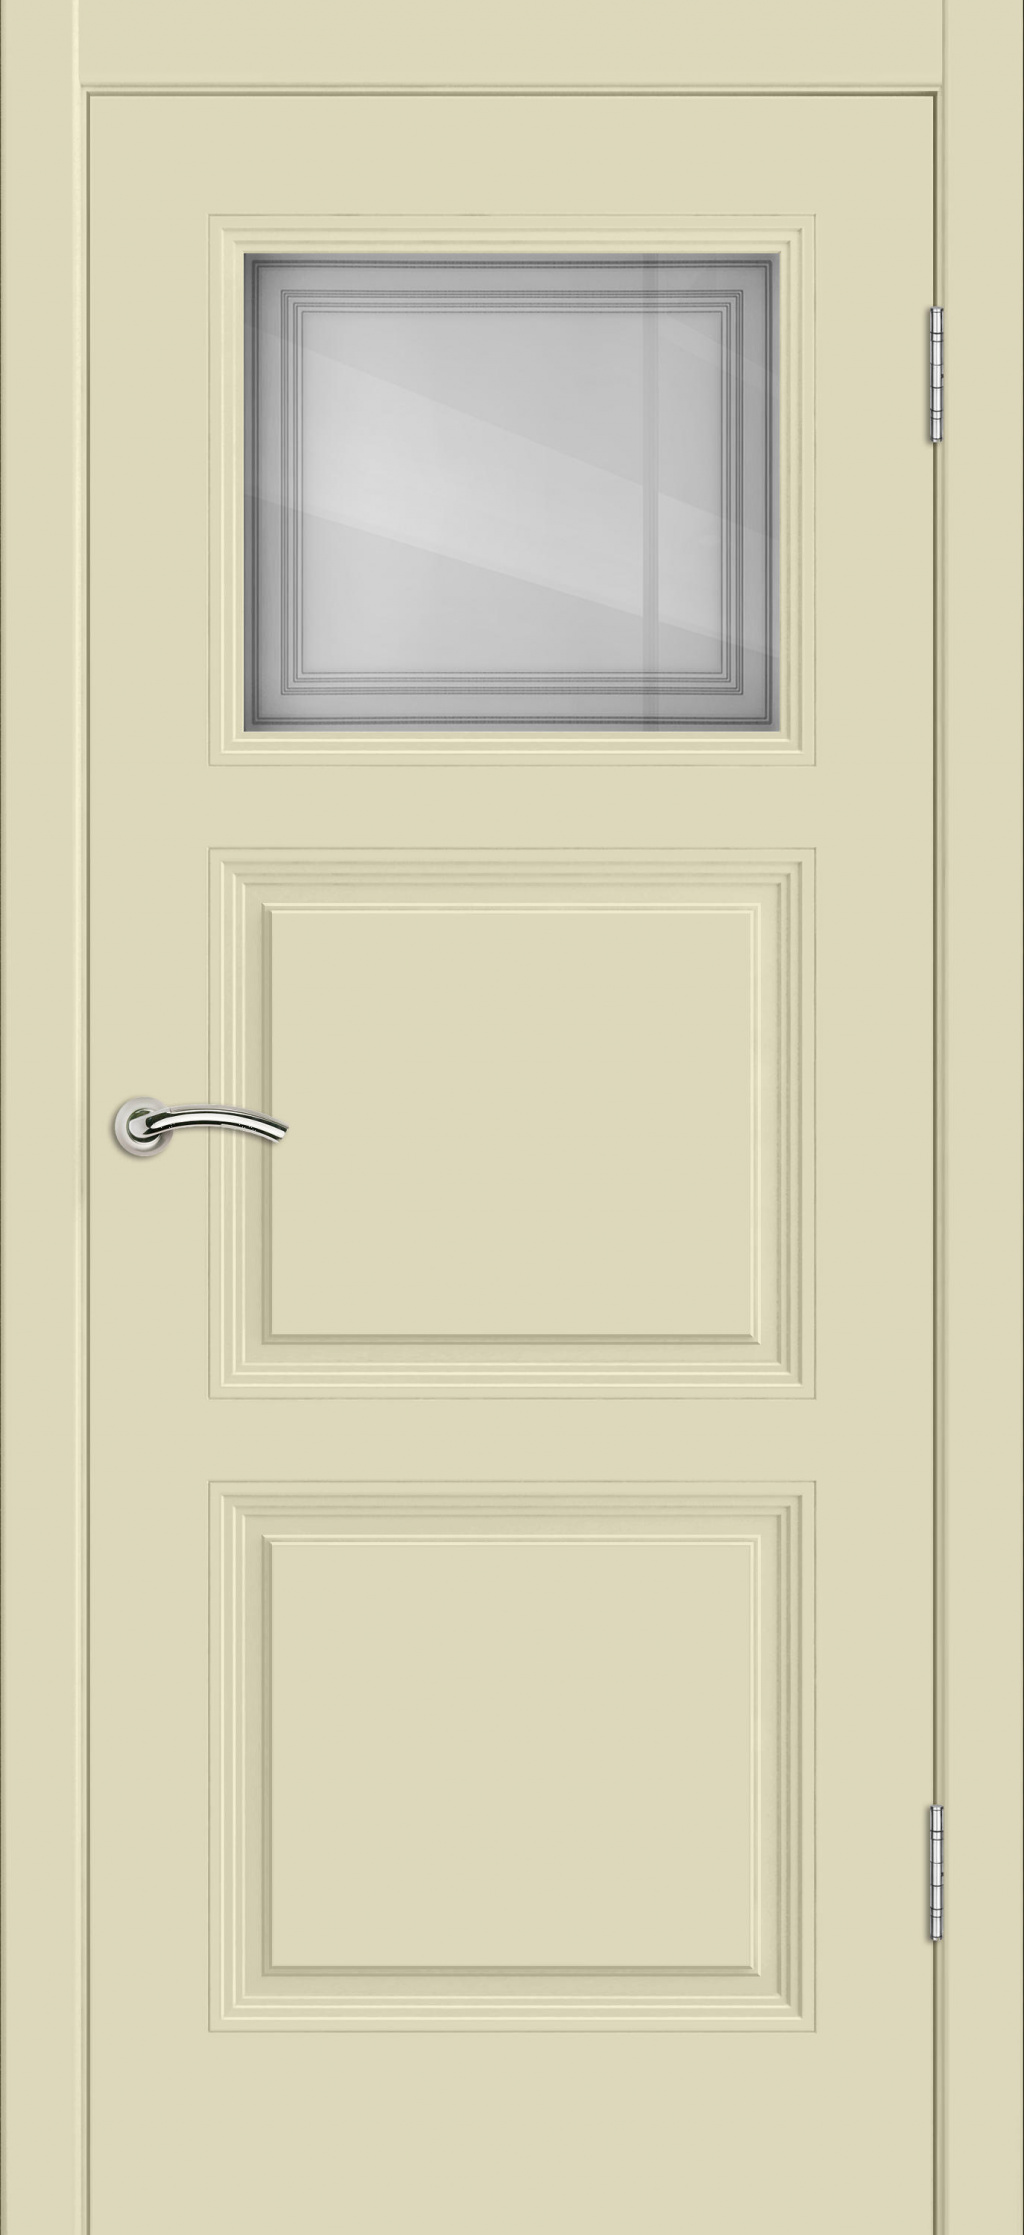 Cordondoor Межкомнатная дверь Vision 3 ПО Узор 1-1, арт. 19309 - фото №1